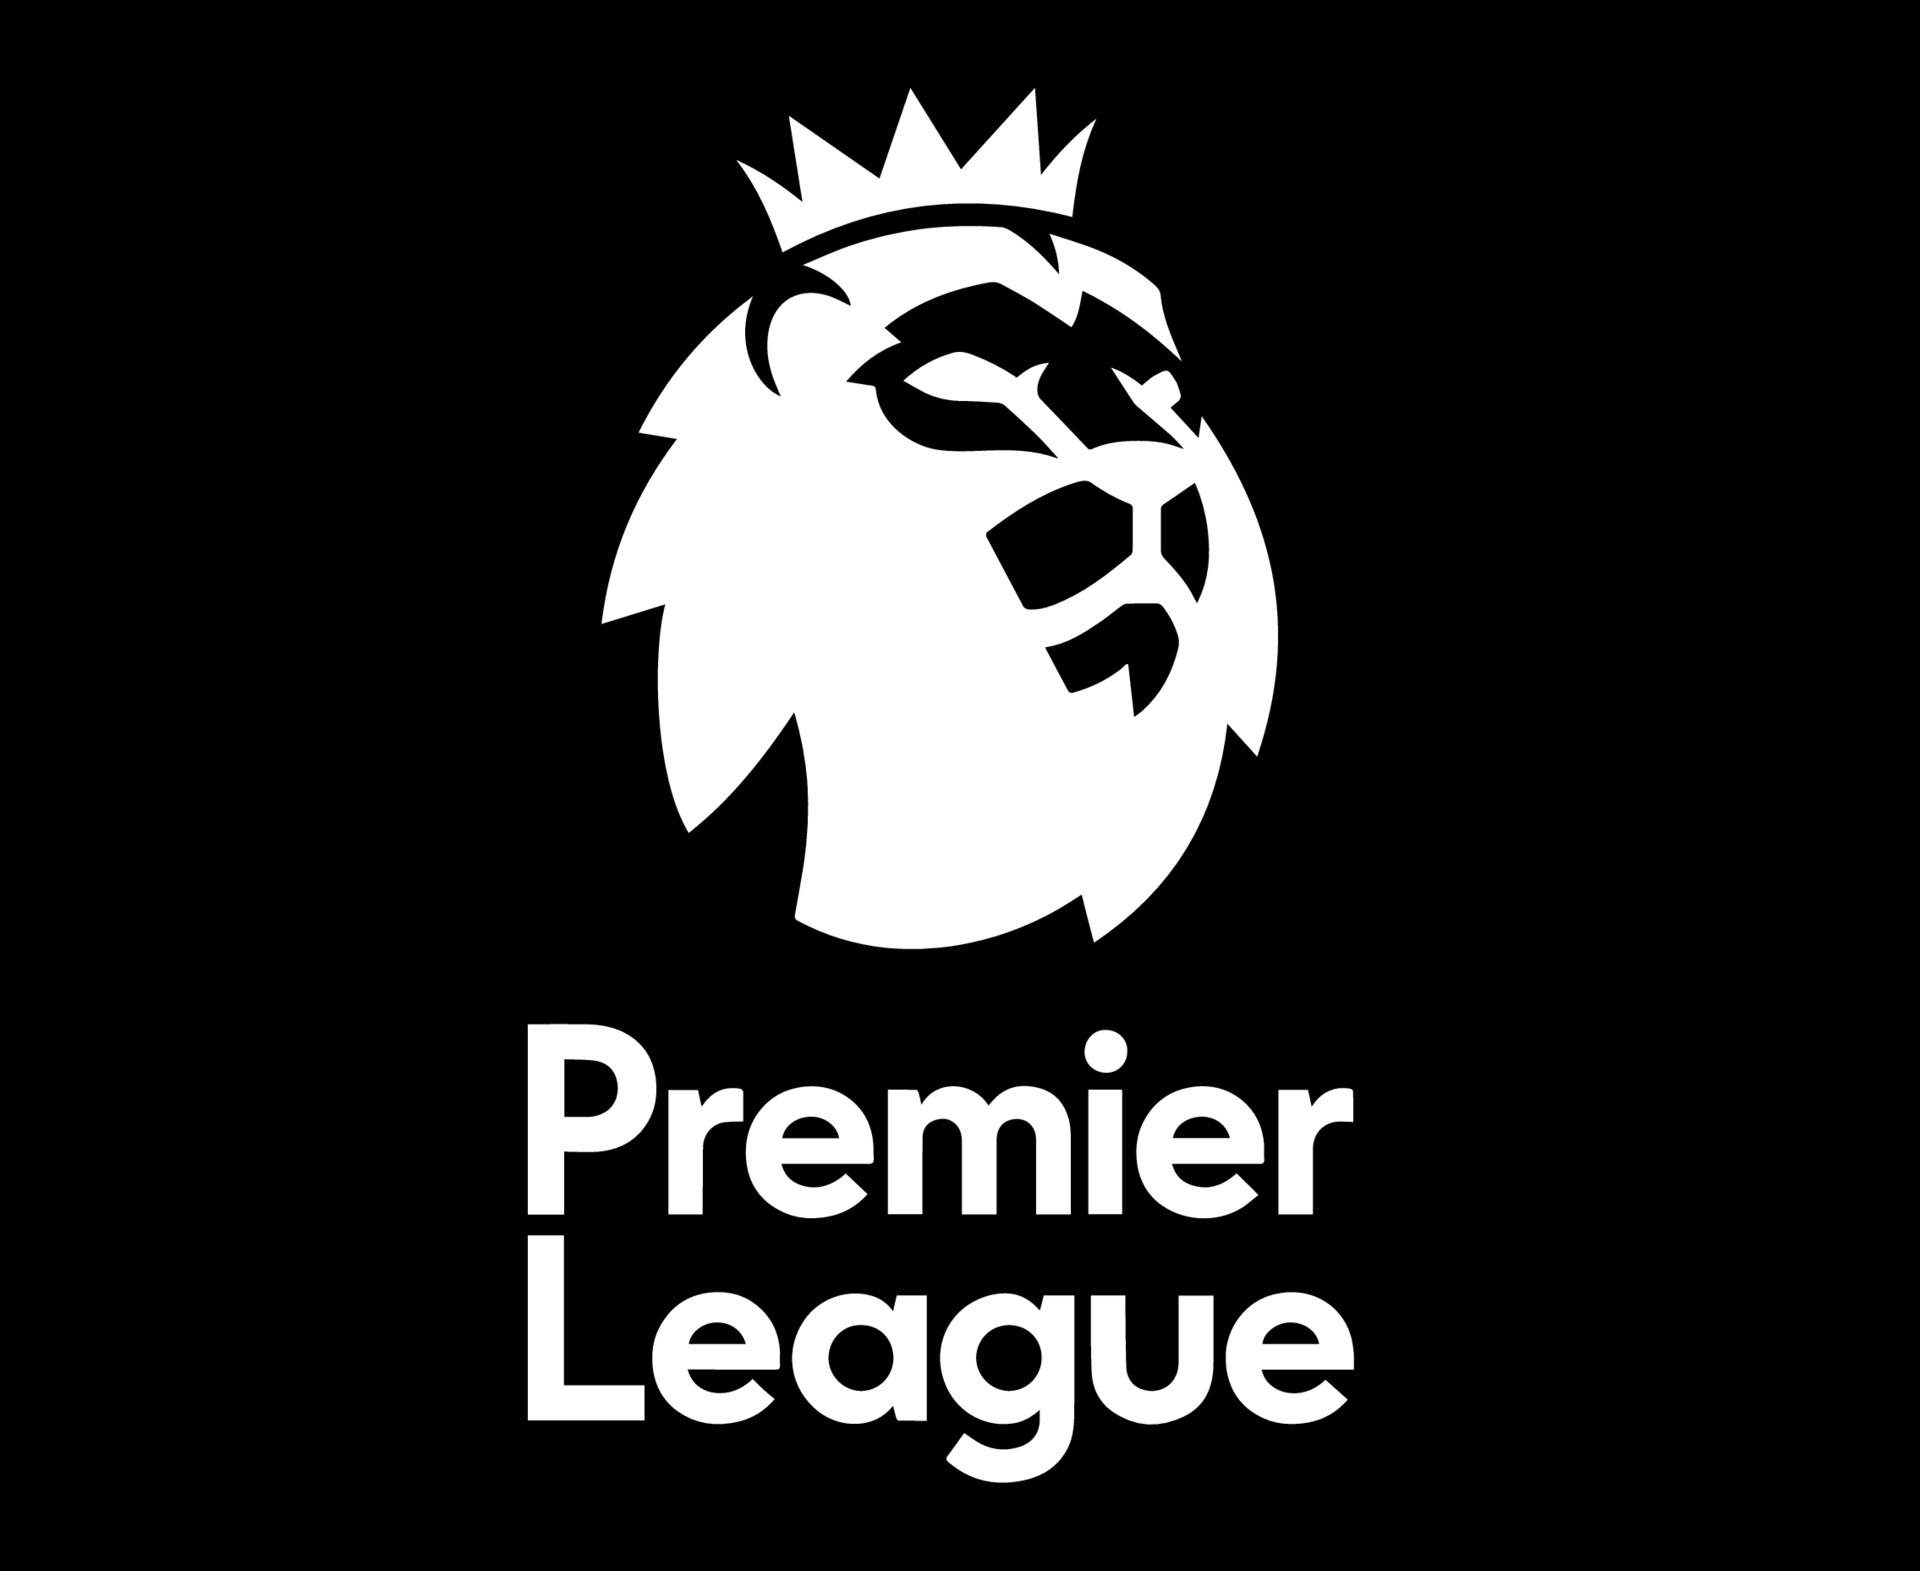 Premier League Logo Symbol mit Namen Schwarz-Weiß-Design England Fußball Vektor europäische Länder Fußballmannschaften Illustration 10994261 Vektor Kunst bei Vecteezy